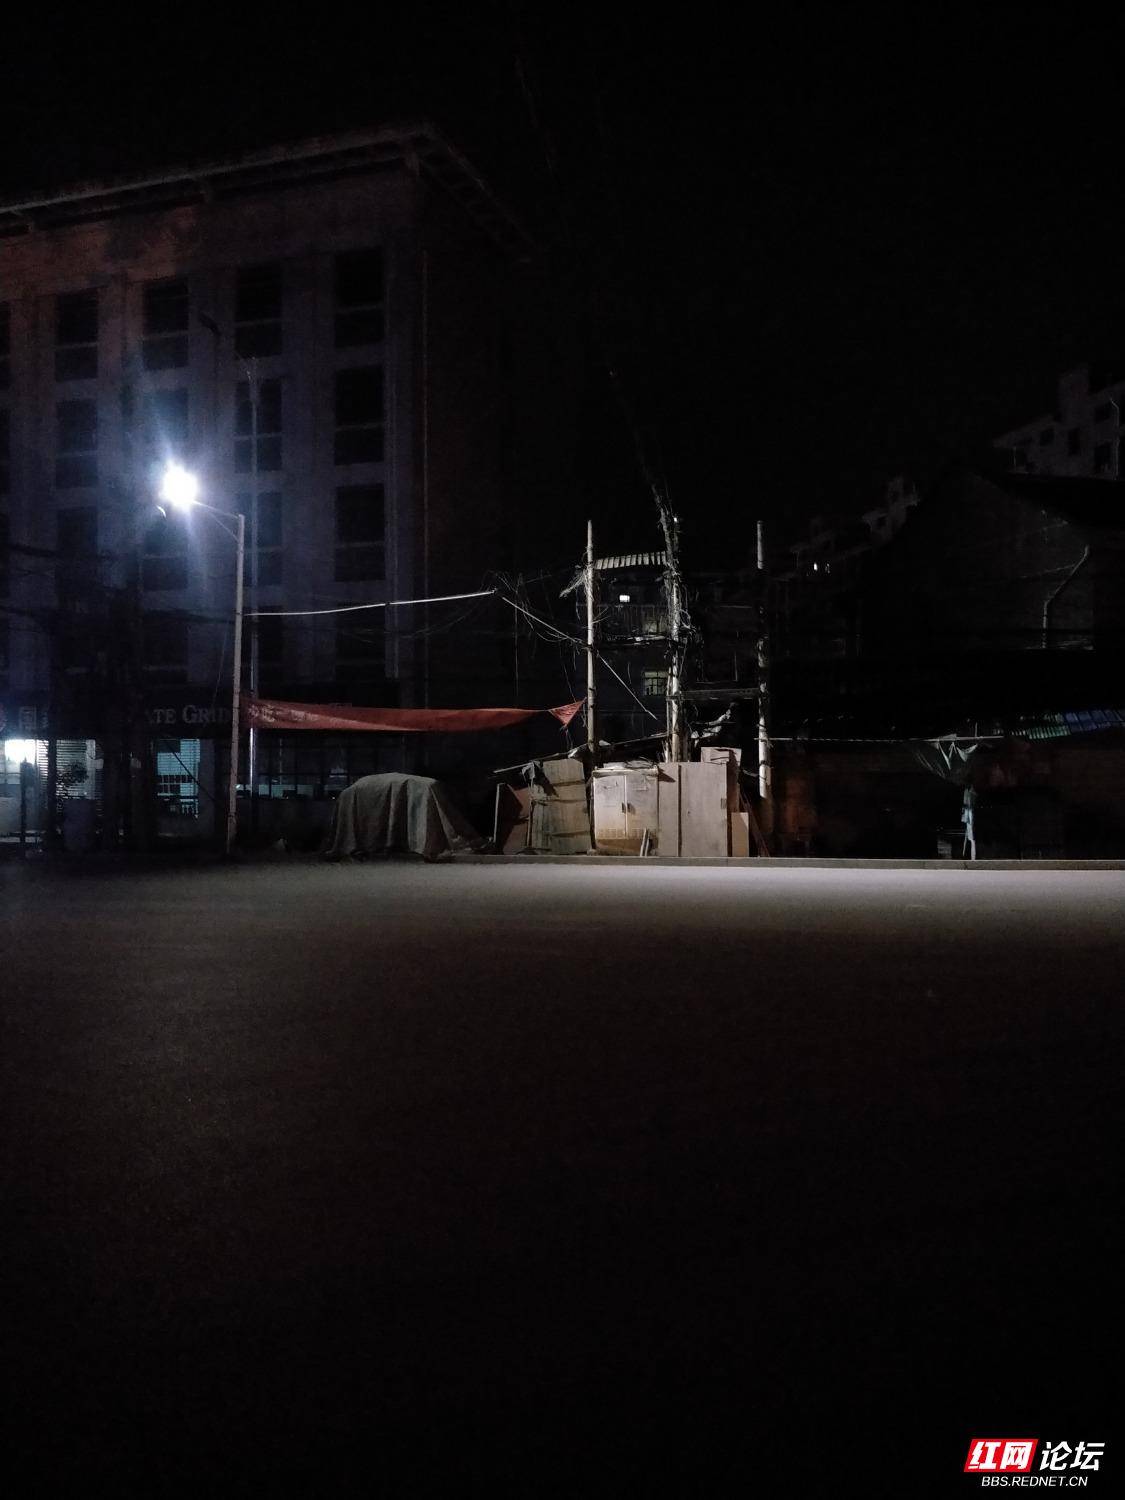 洪江市安江镇人民医院丁字路口处,三条路的交汇处,夜晚一片漆黑